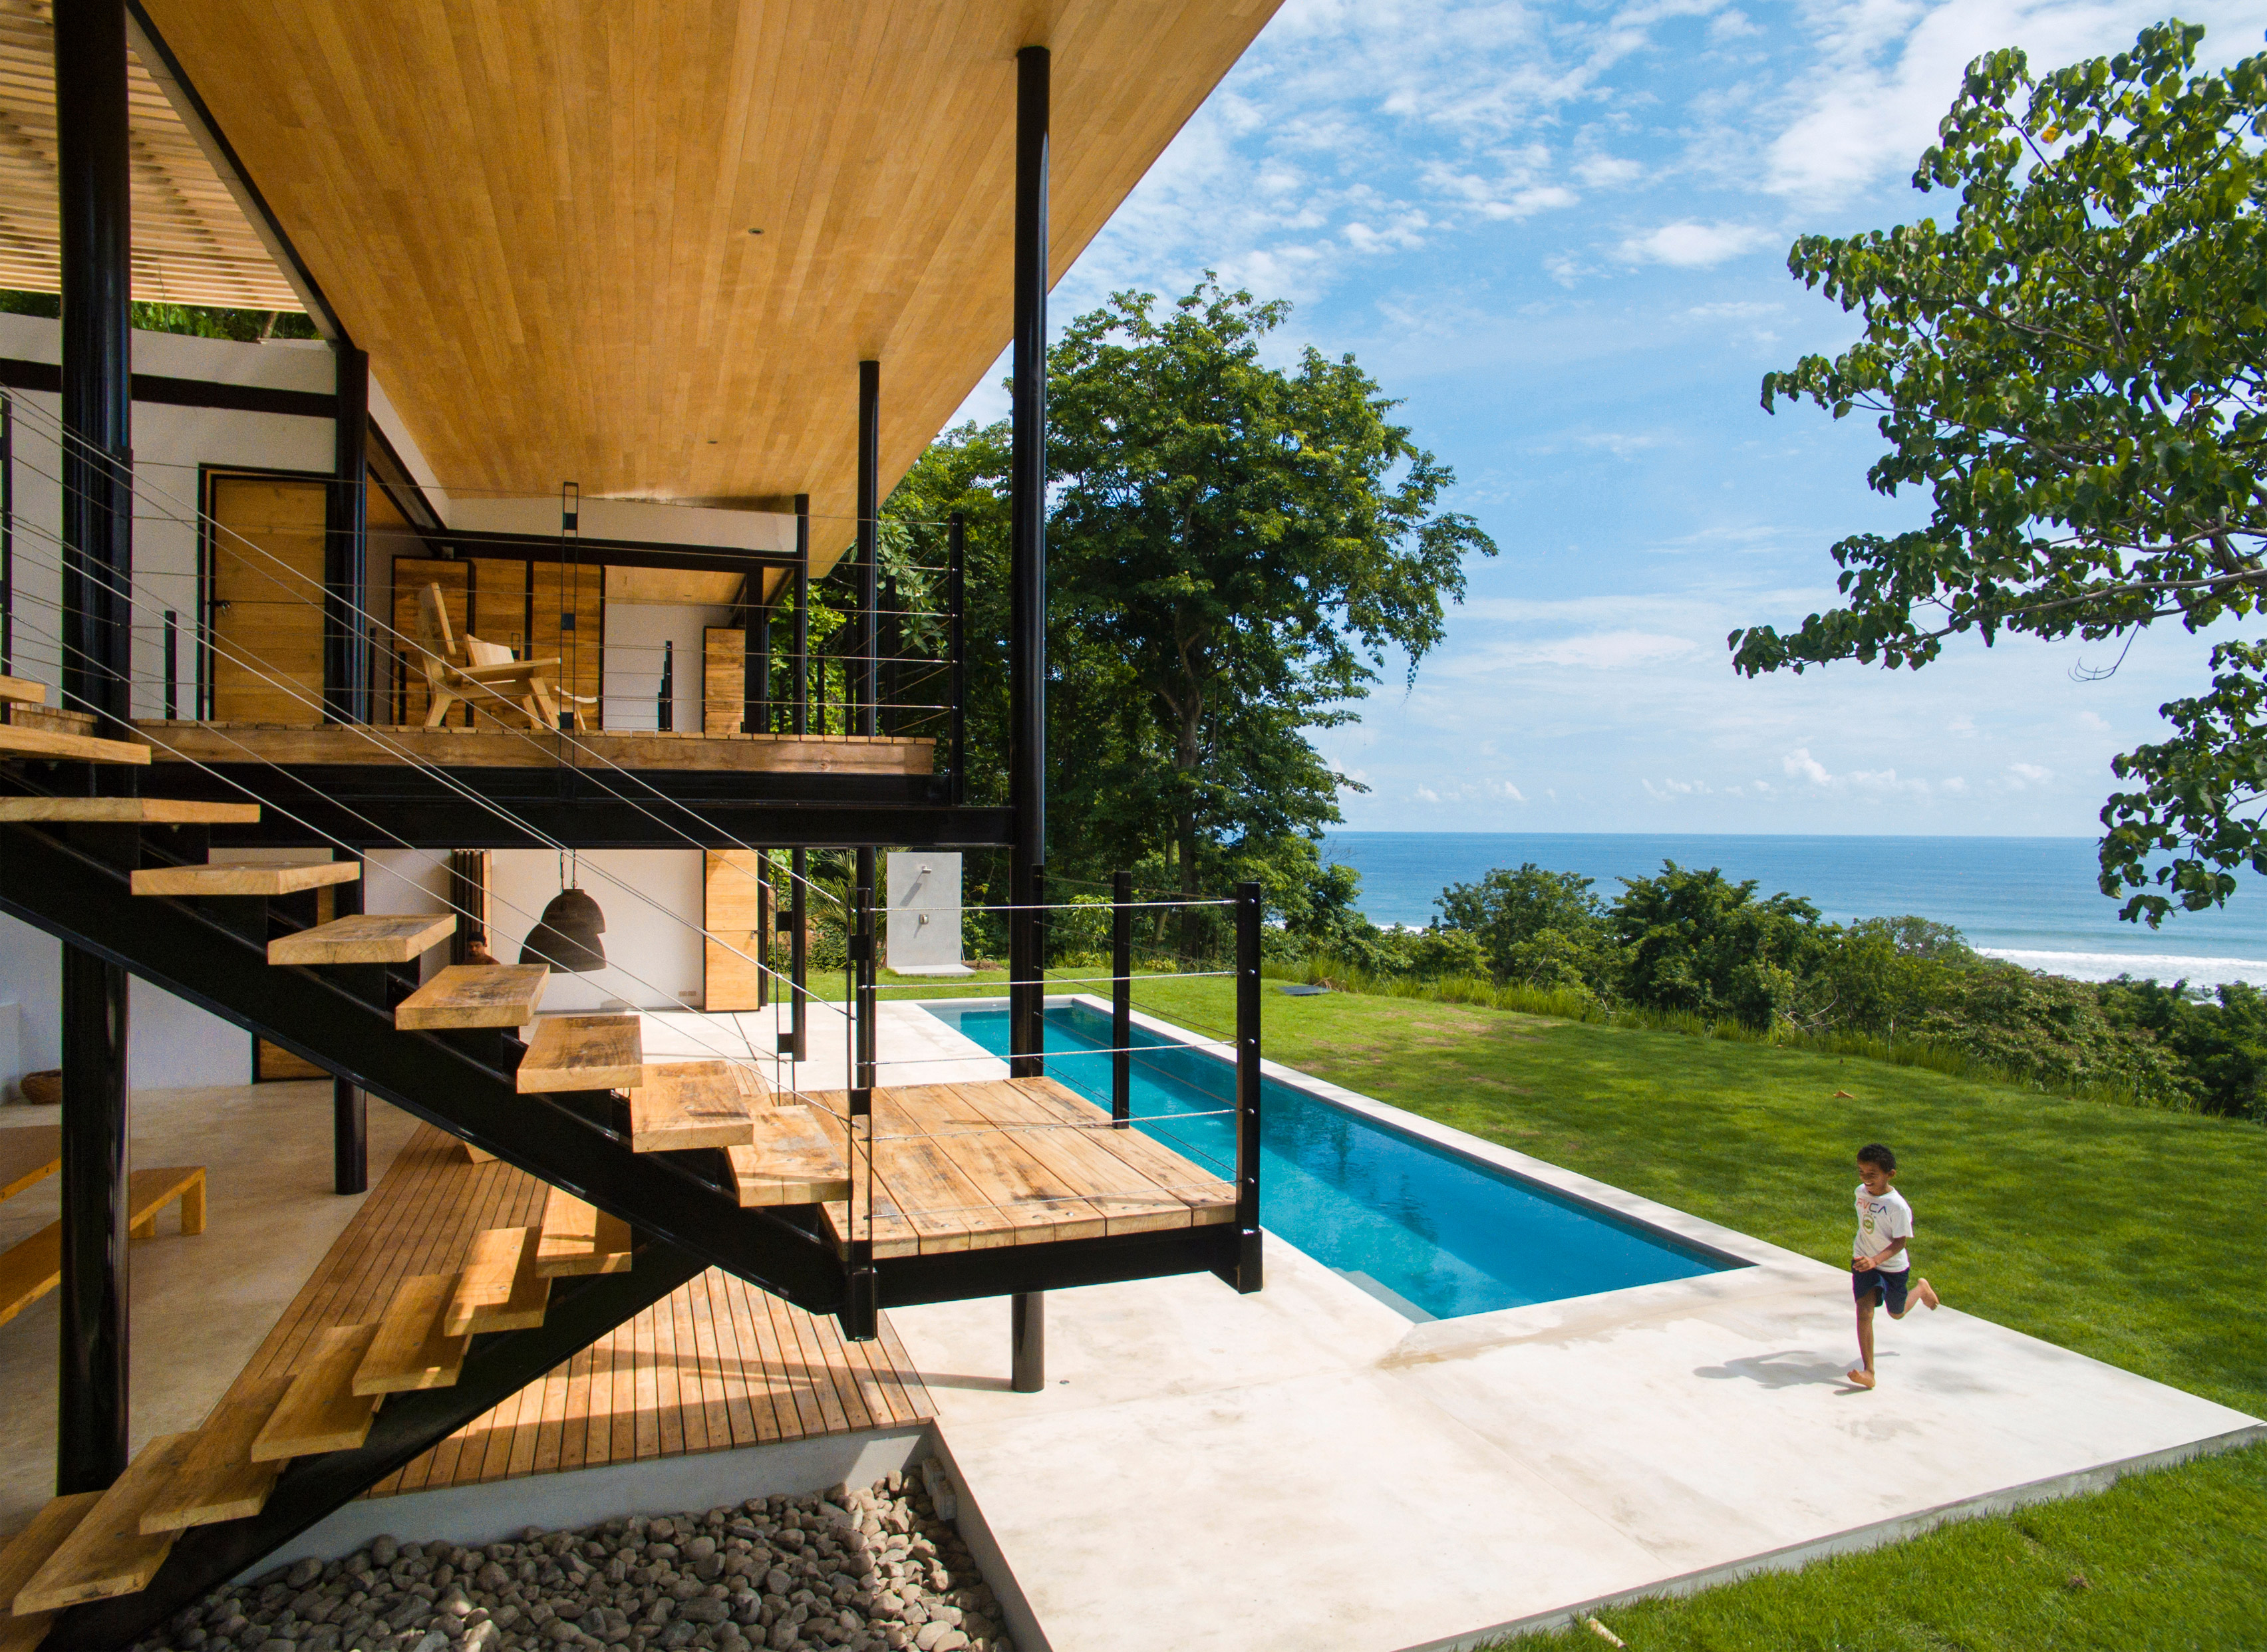 Benjamin Garcia Saxe's Ocean Eye House features movable wooden walls